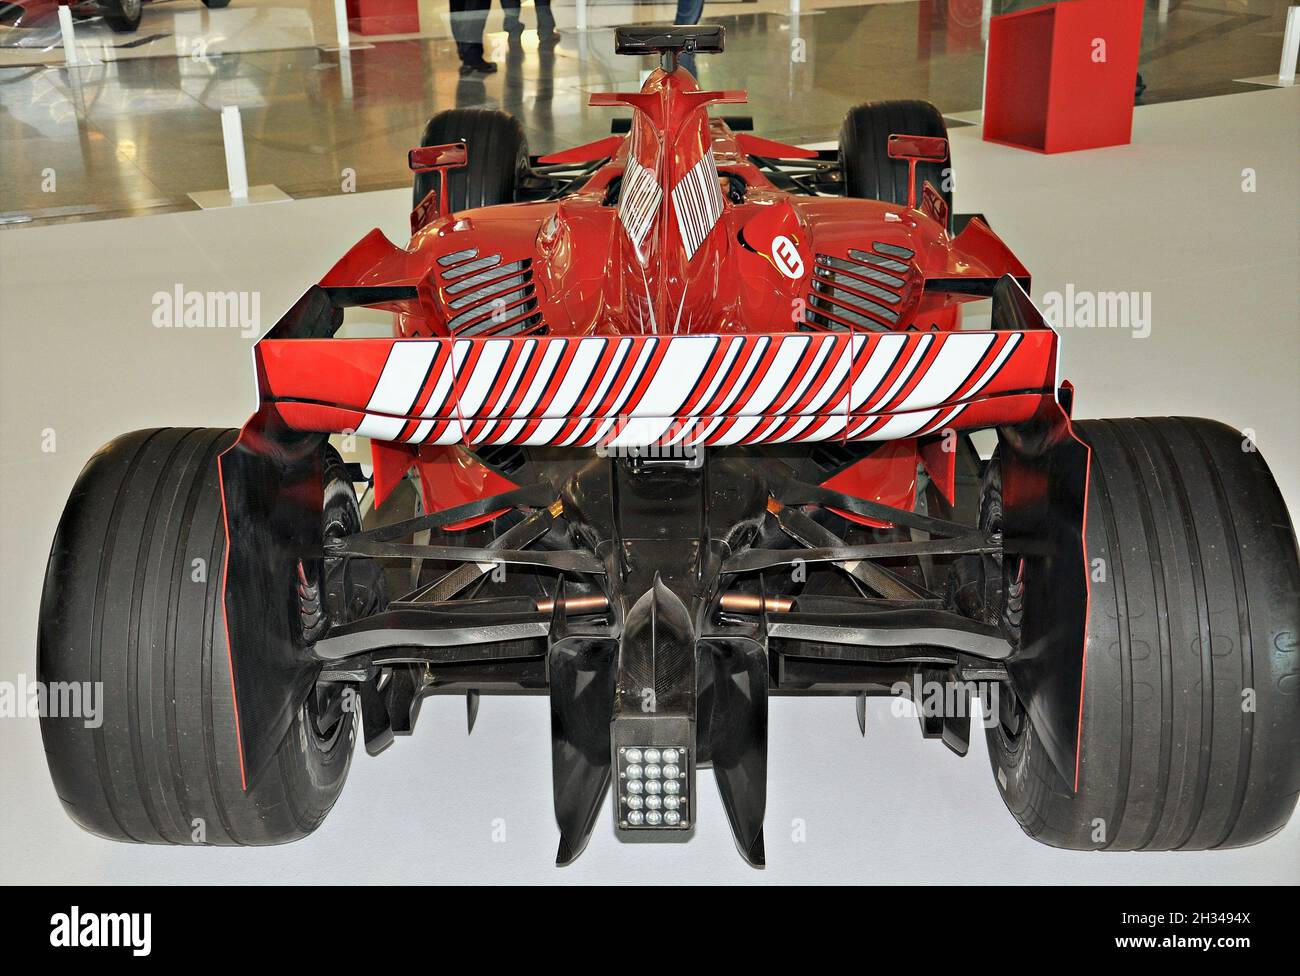 Exposition de Ferrari Formule 1 au musée des sciences de Valence, Communauté Valencienne, Espagne Banque D'Images